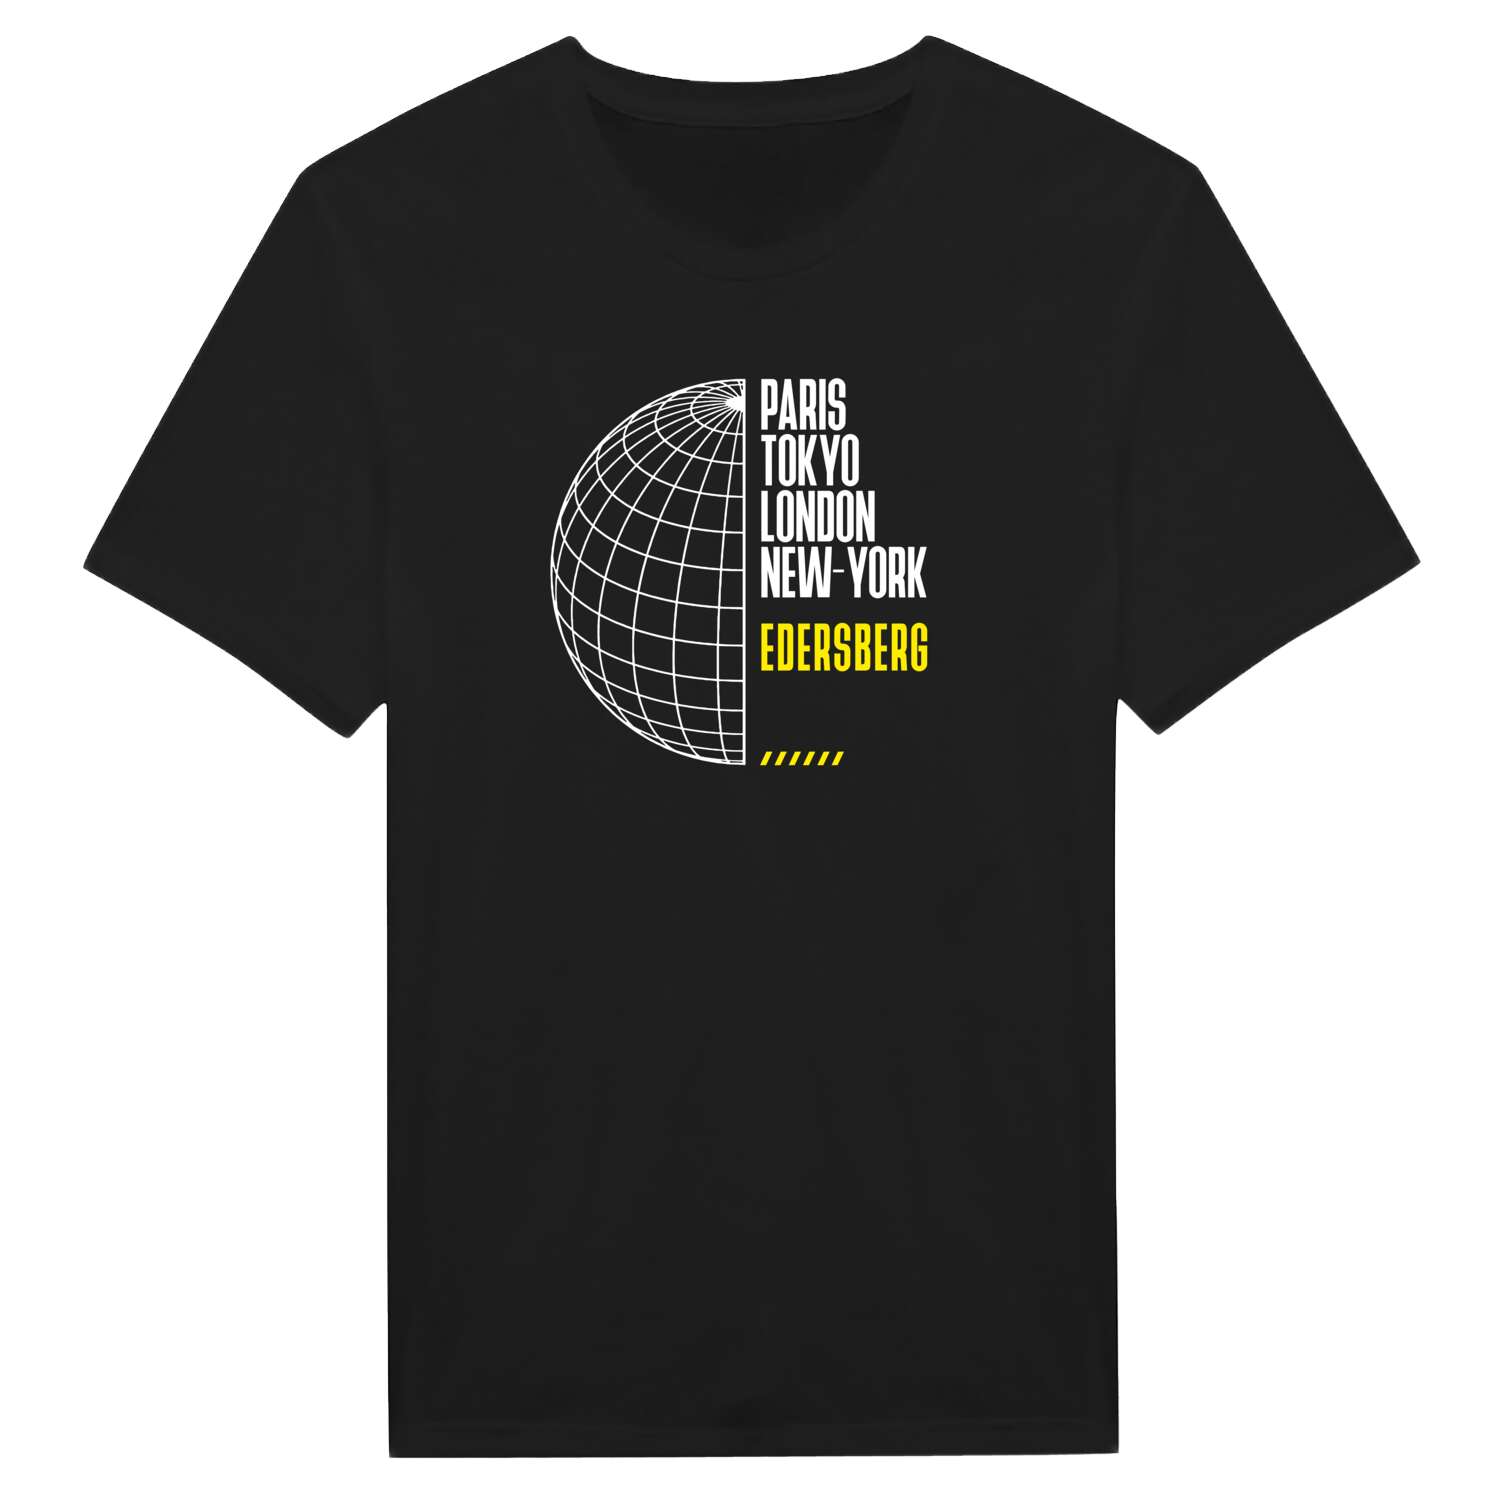 Edersberg T-Shirt »Paris Tokyo London«